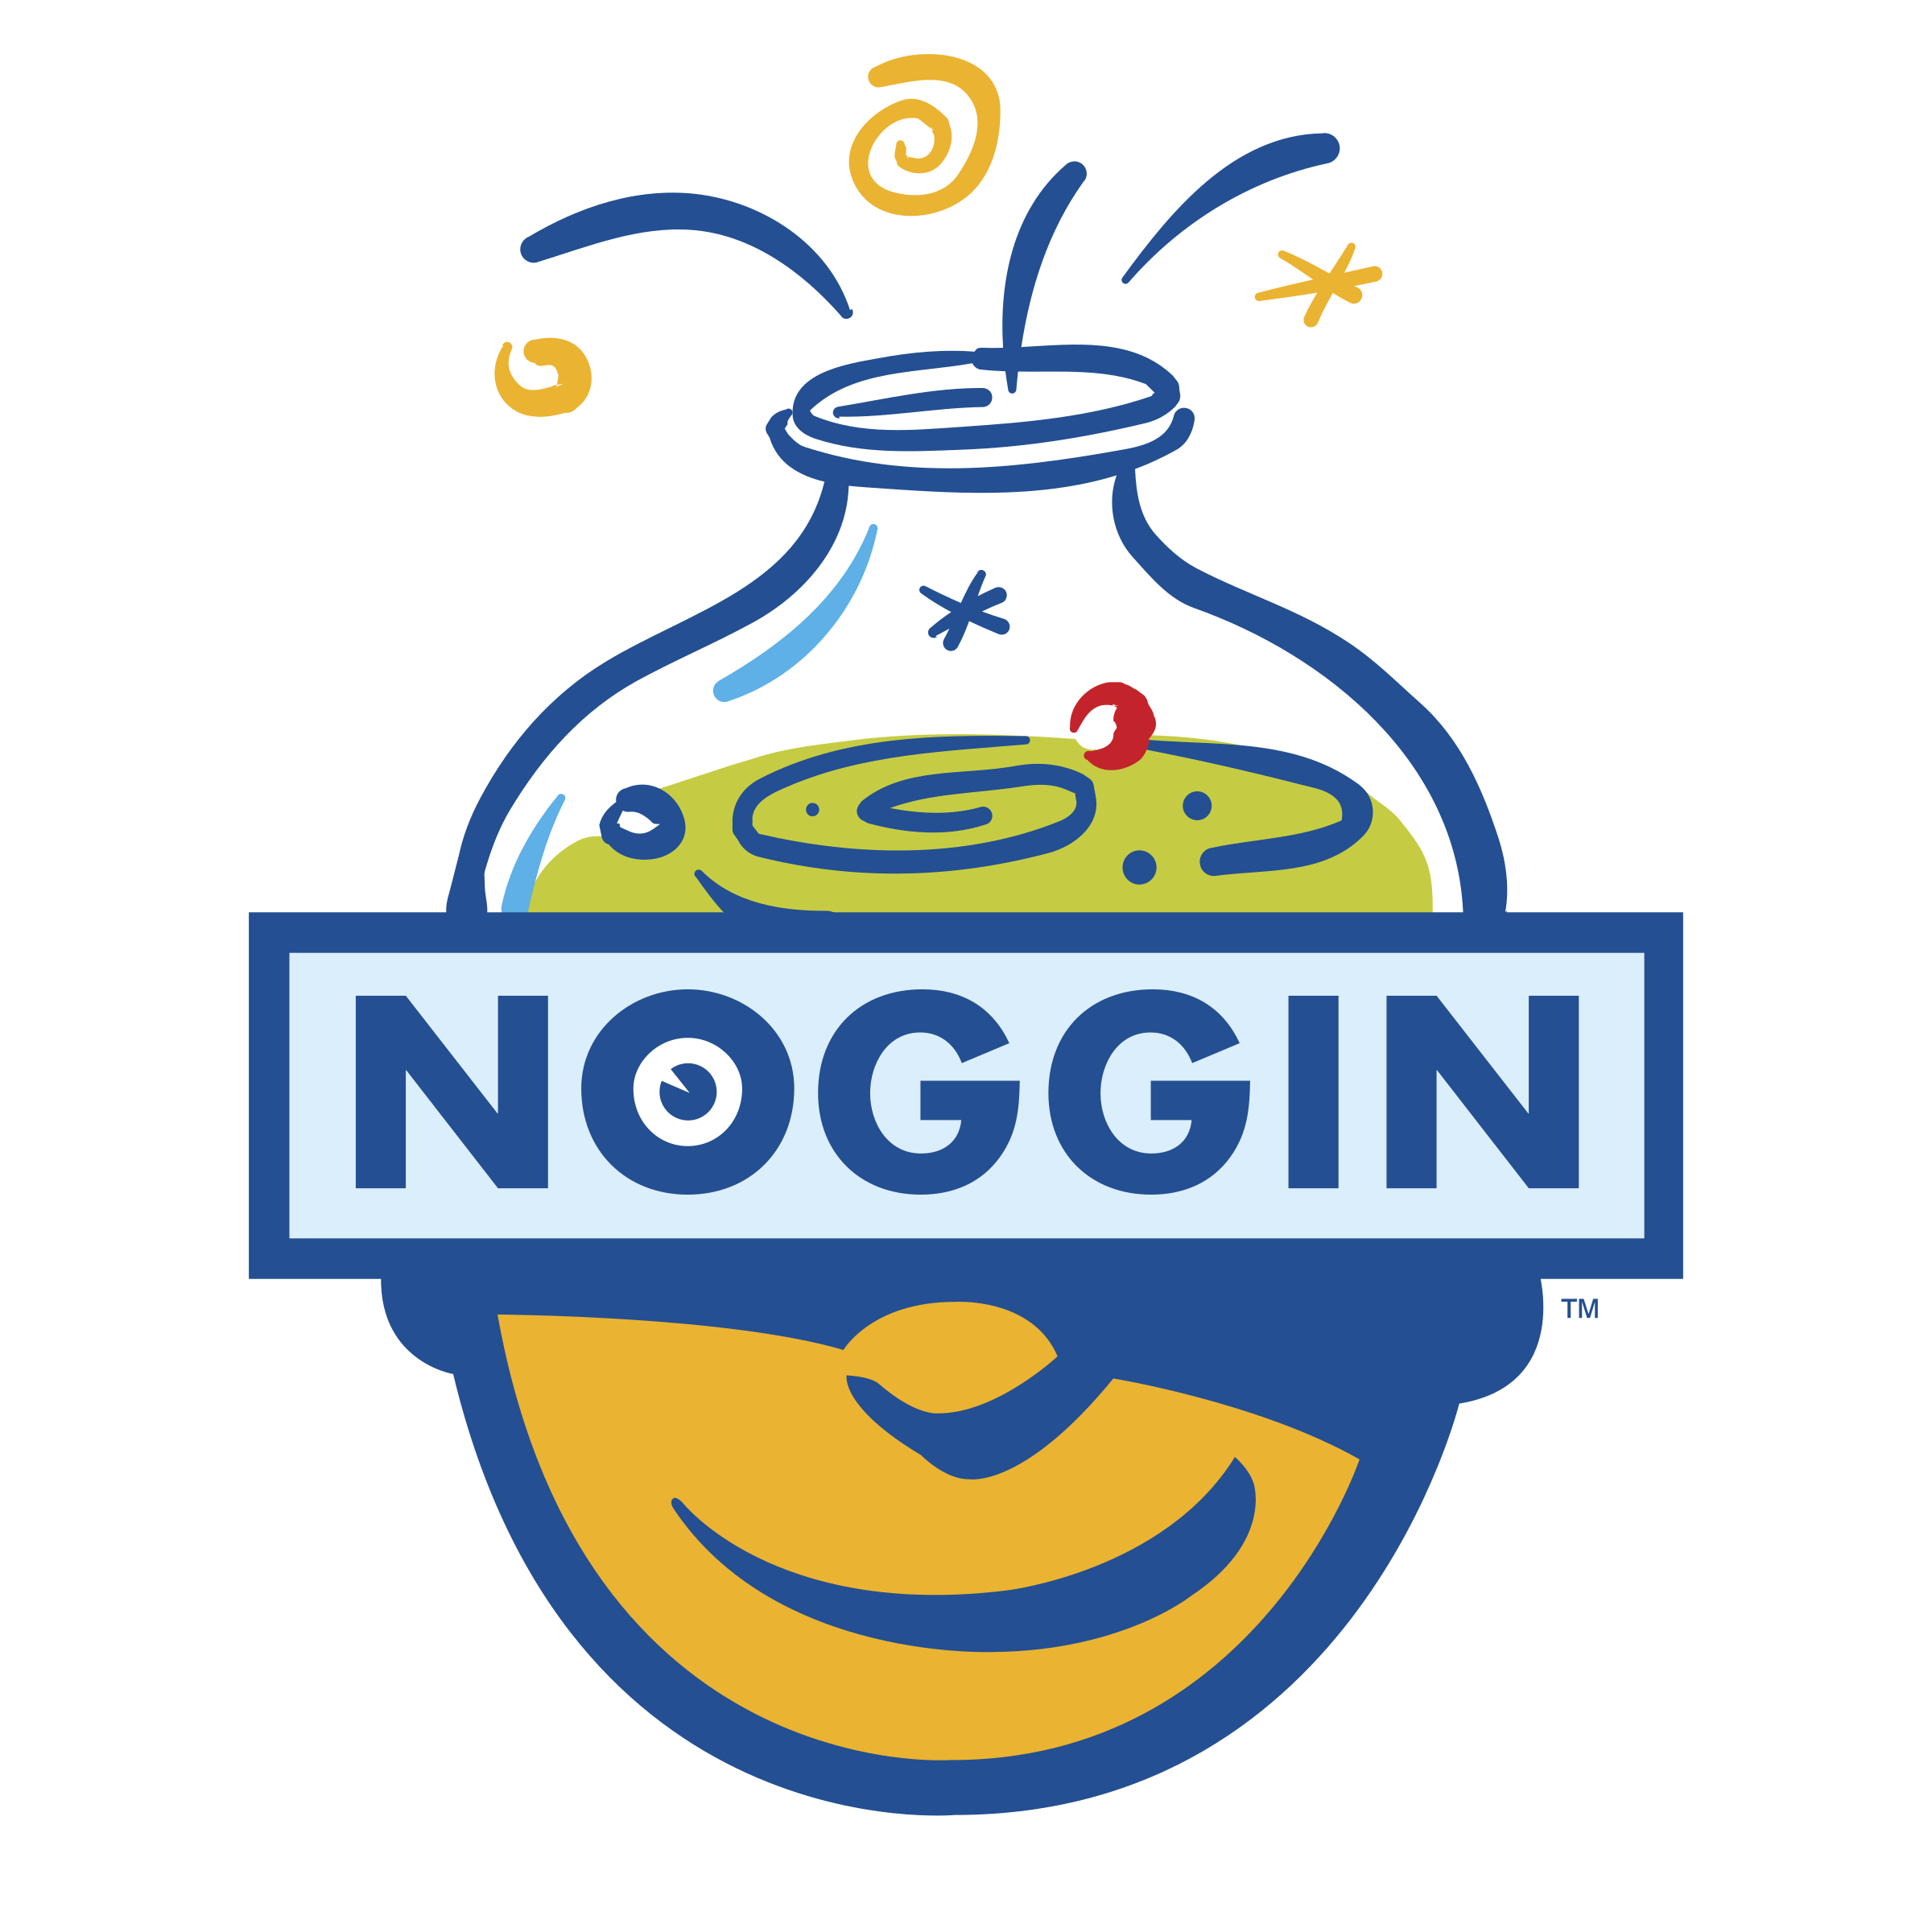 Noggin Logo - Noggin Logo PNG Transparent & SVG Vector - Freebie Supply